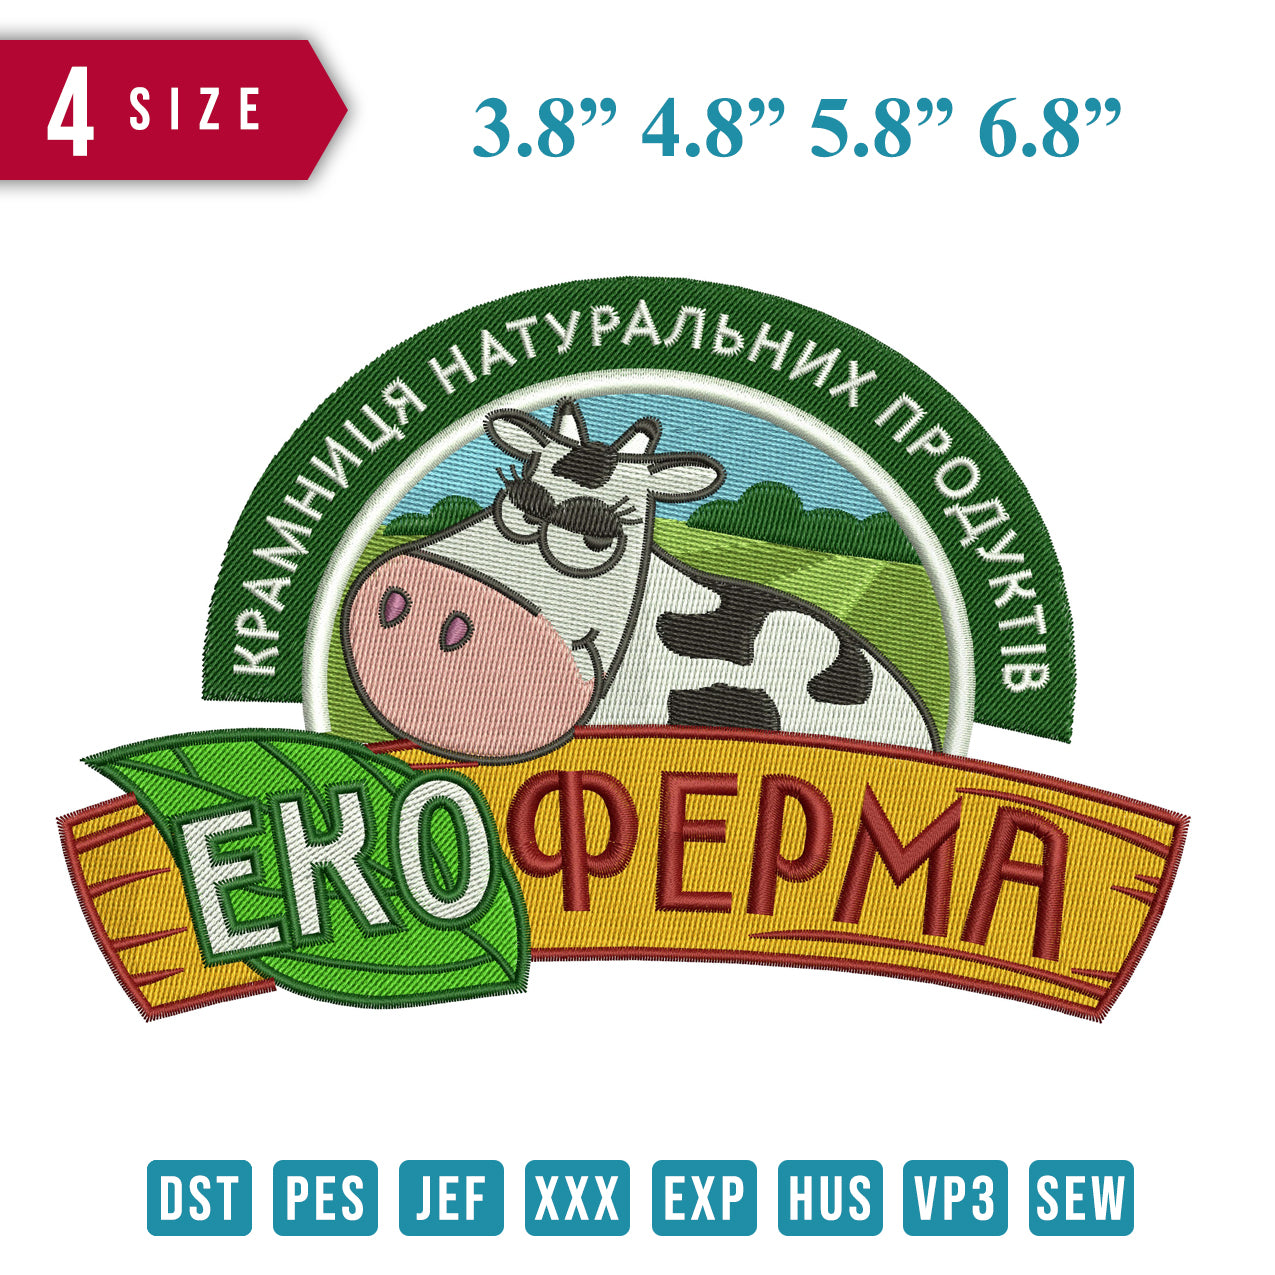 Ekopepma Cow